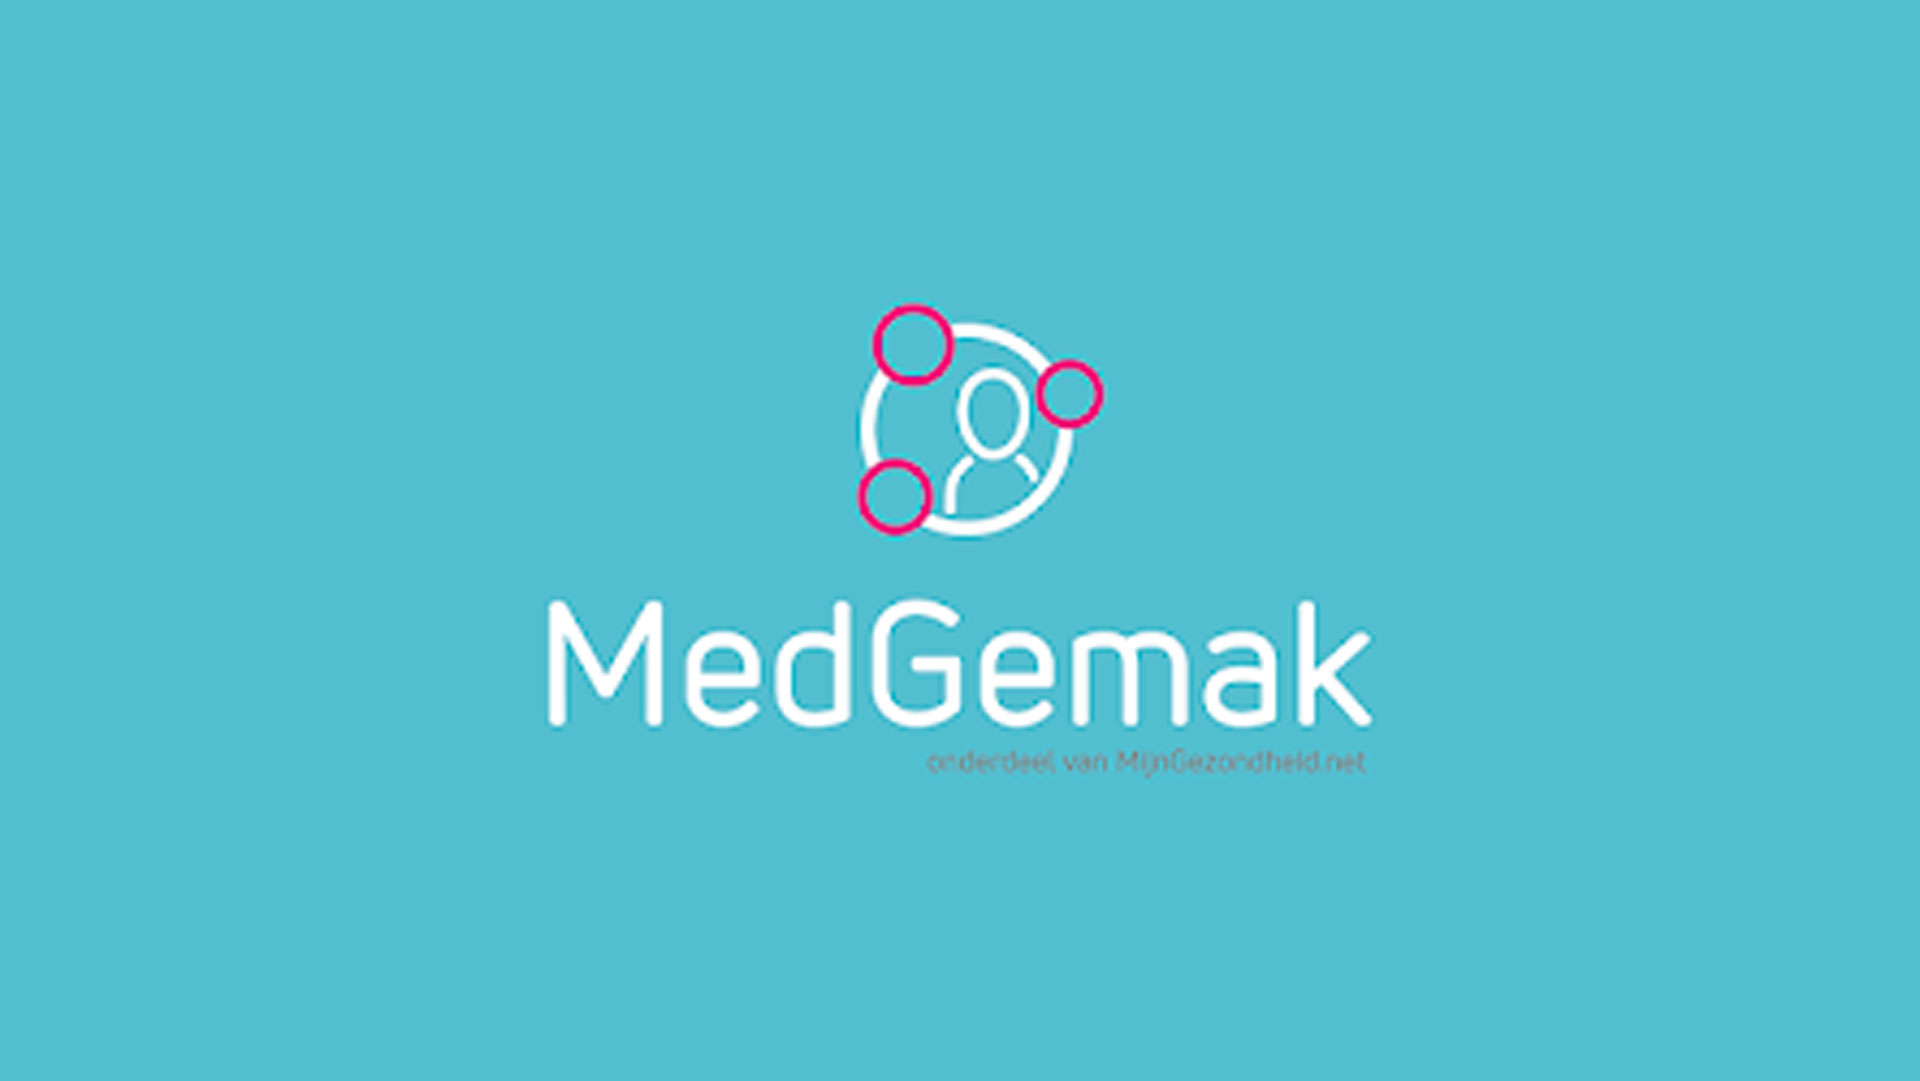 MedGemak-app_1920x1080